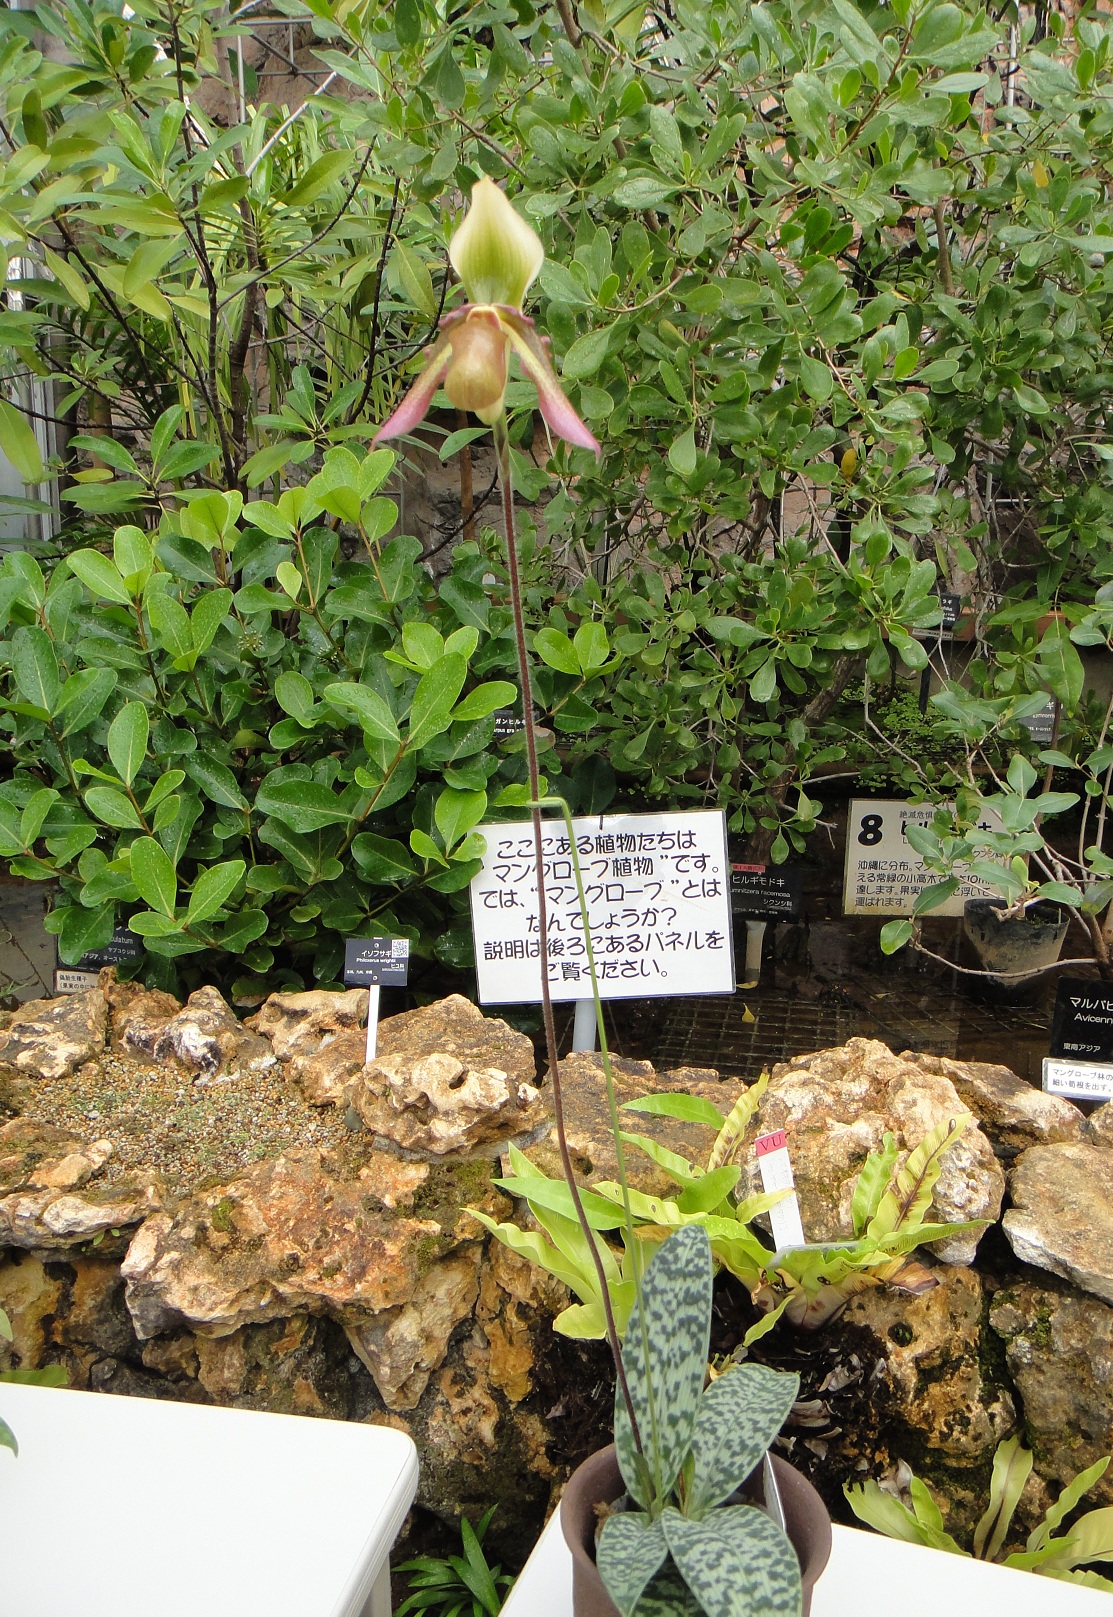 http://orchids.la.coocan.jp/Paphiopedilum/Paphiopedilum%20hookerae/DSC02547.JPG